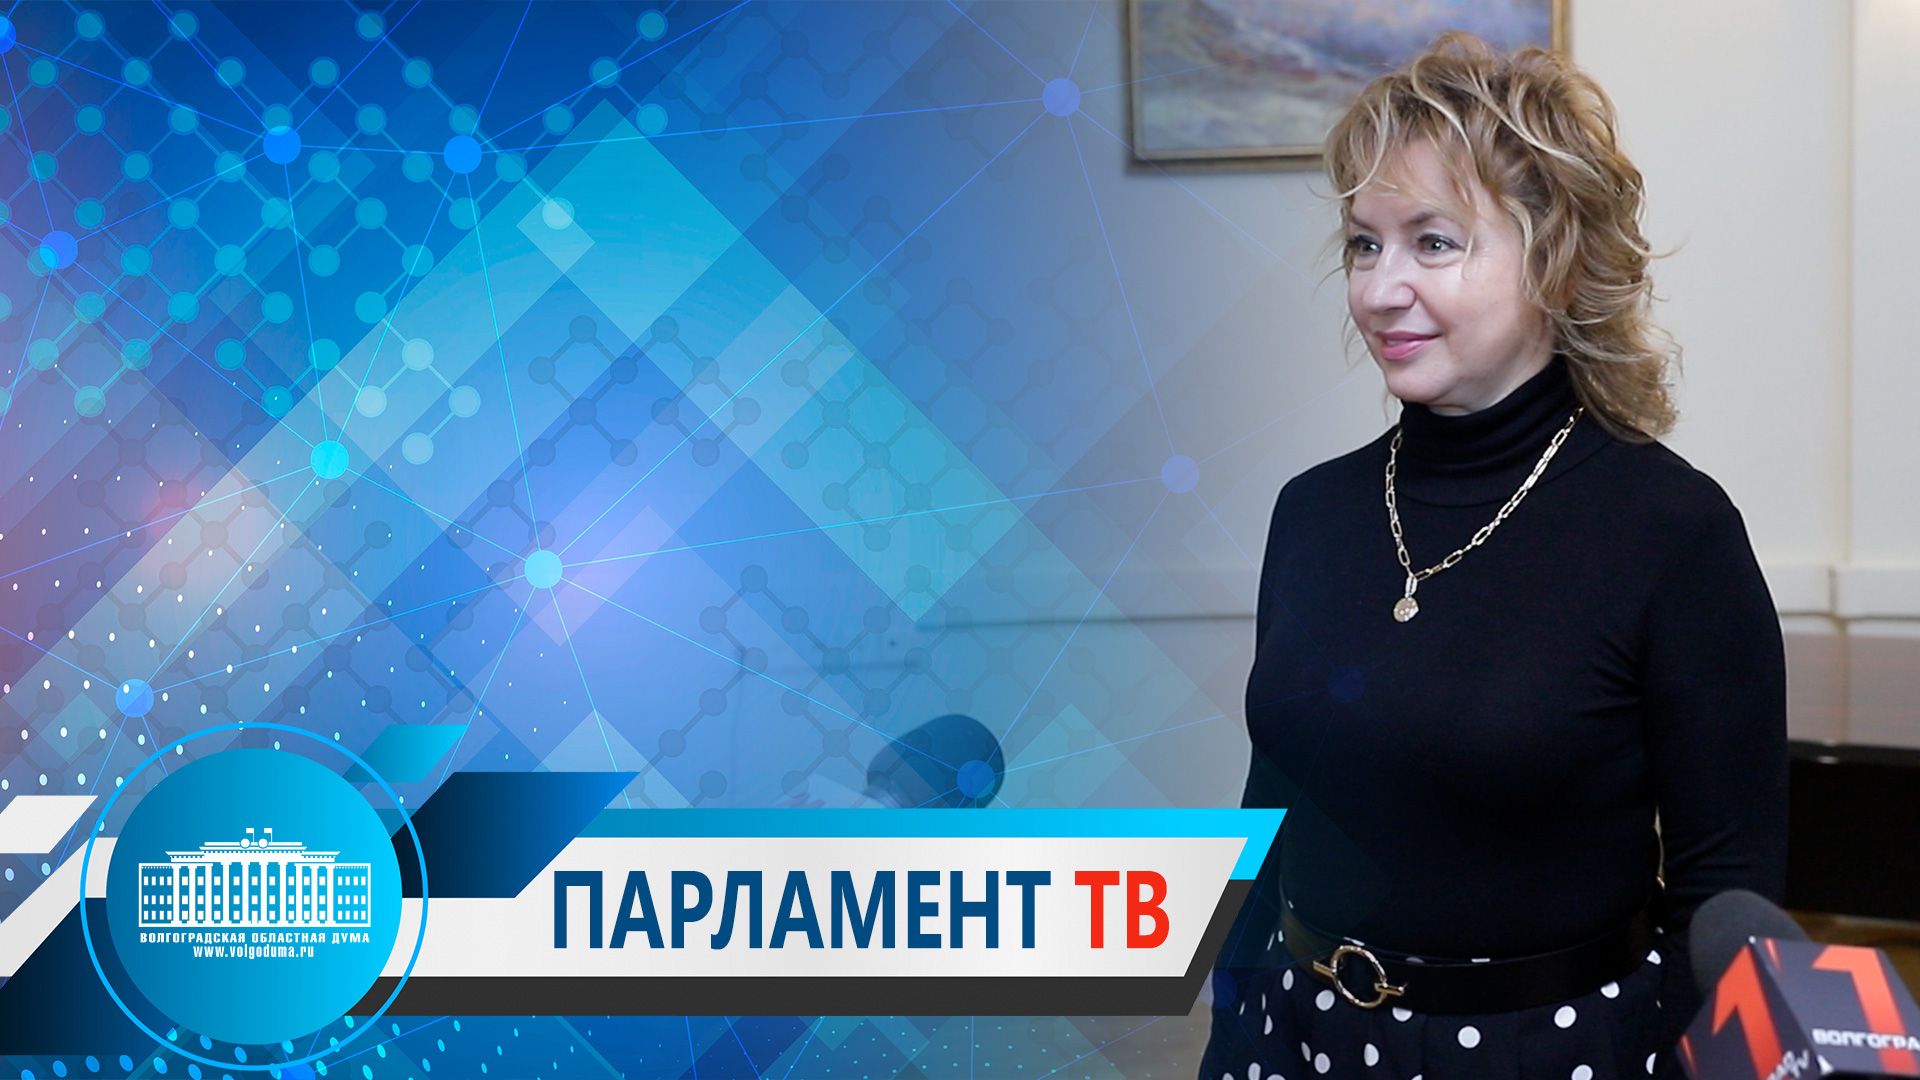 Татьяна Бухтина: "В регионе созданы все условия для самореализации талантливых людей"